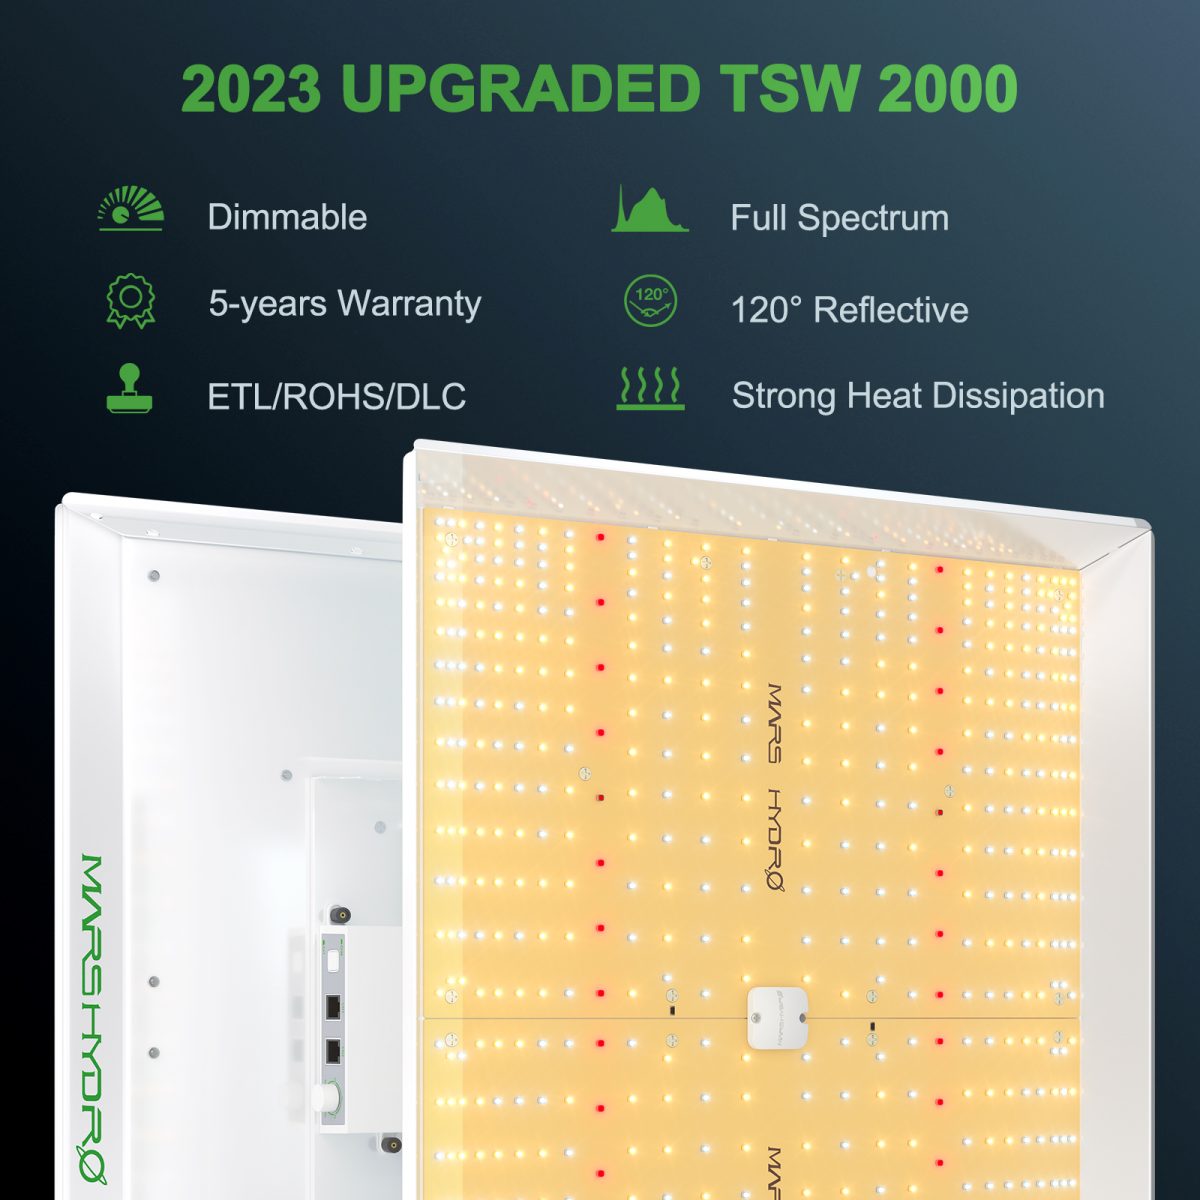 2023 UPGRADED TSW 2000